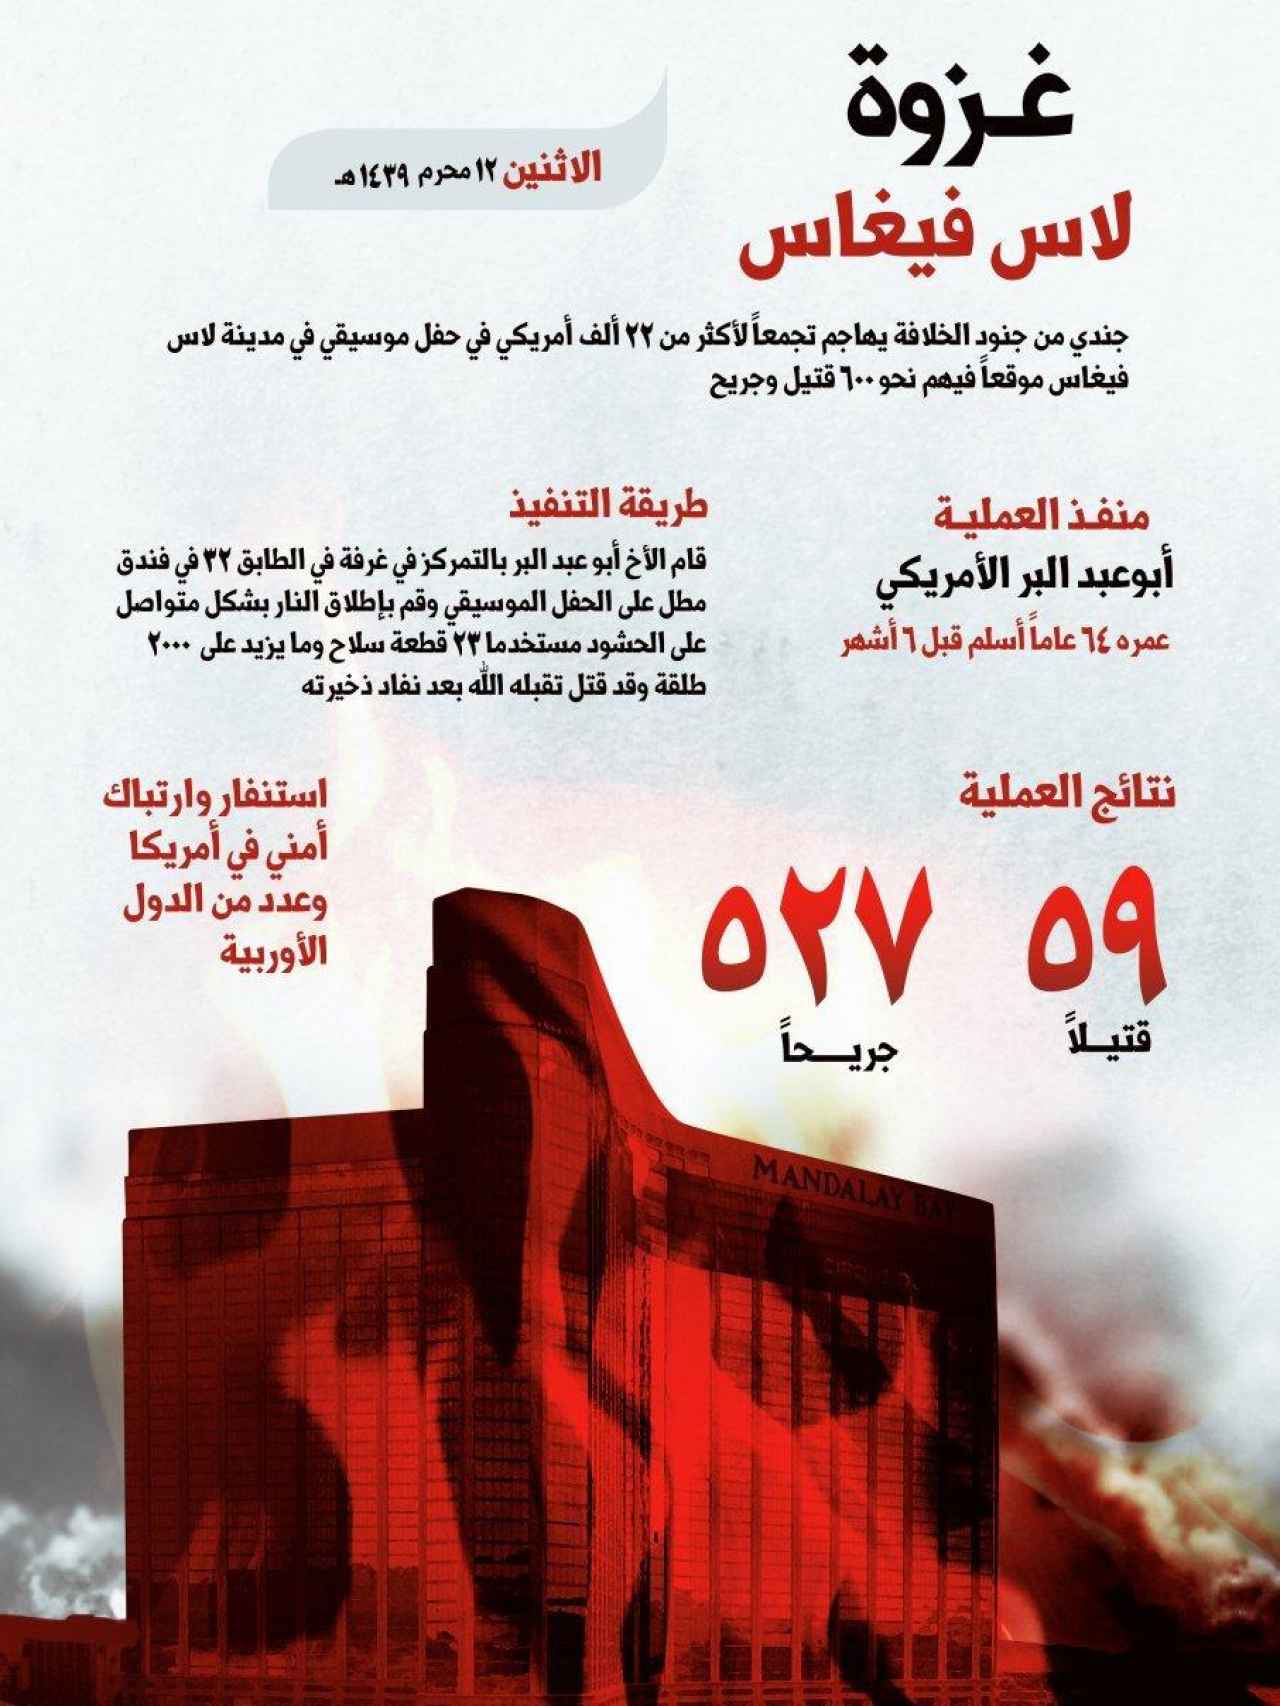 Infografía publicada en la revista Al-Naba, muy próxima al Estado Islámico.